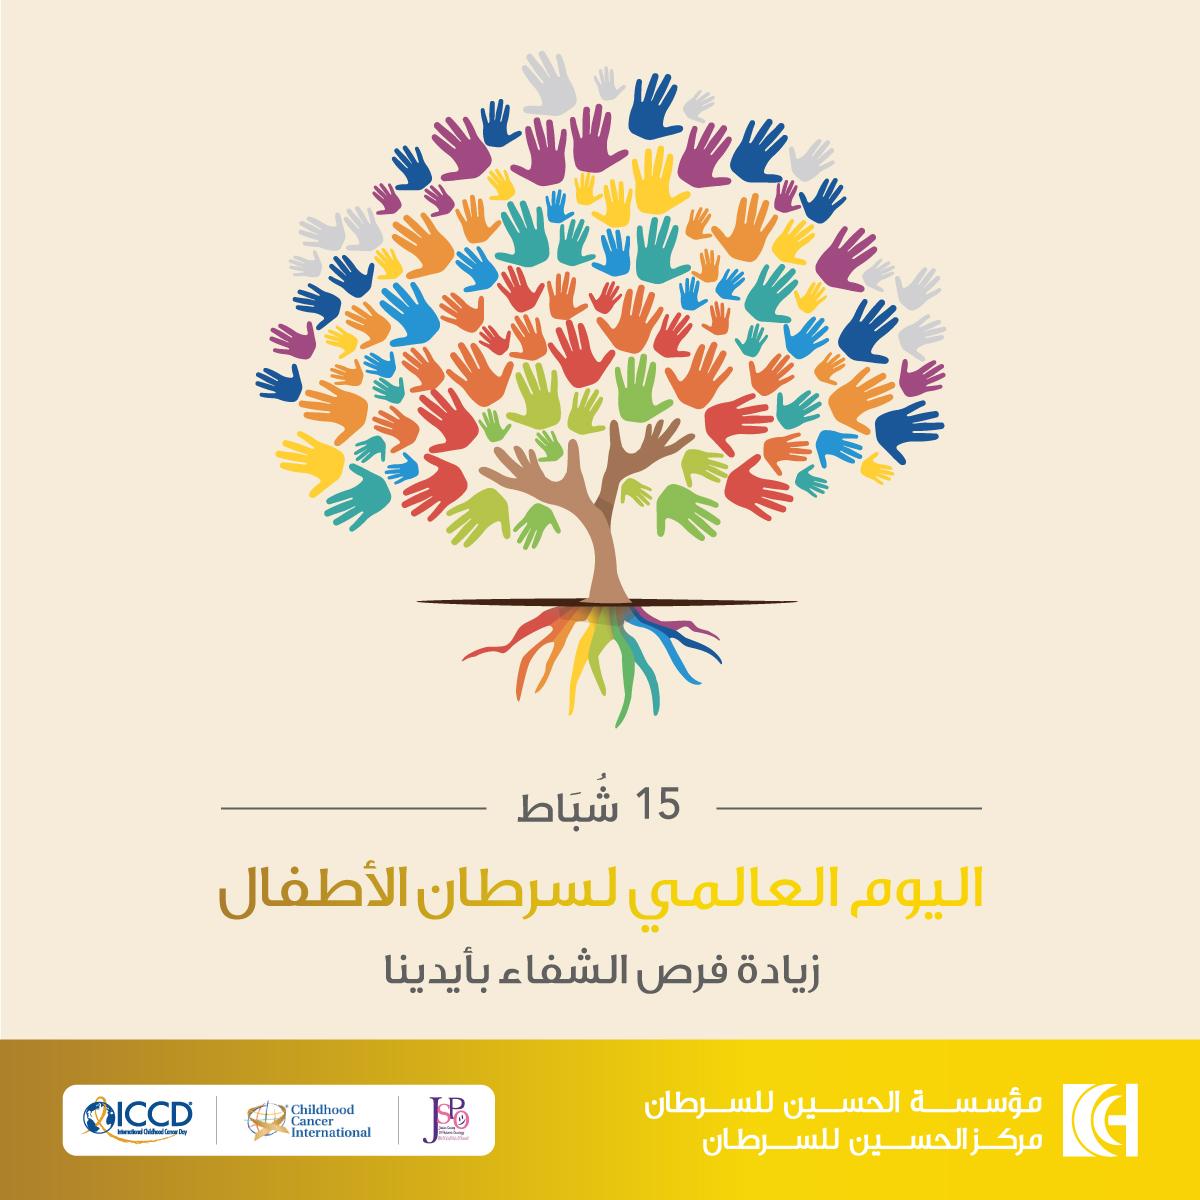    حملة توعوية باليوم العالمي لسرطان الأطفال يطلقها مركز الحسين للسرطان